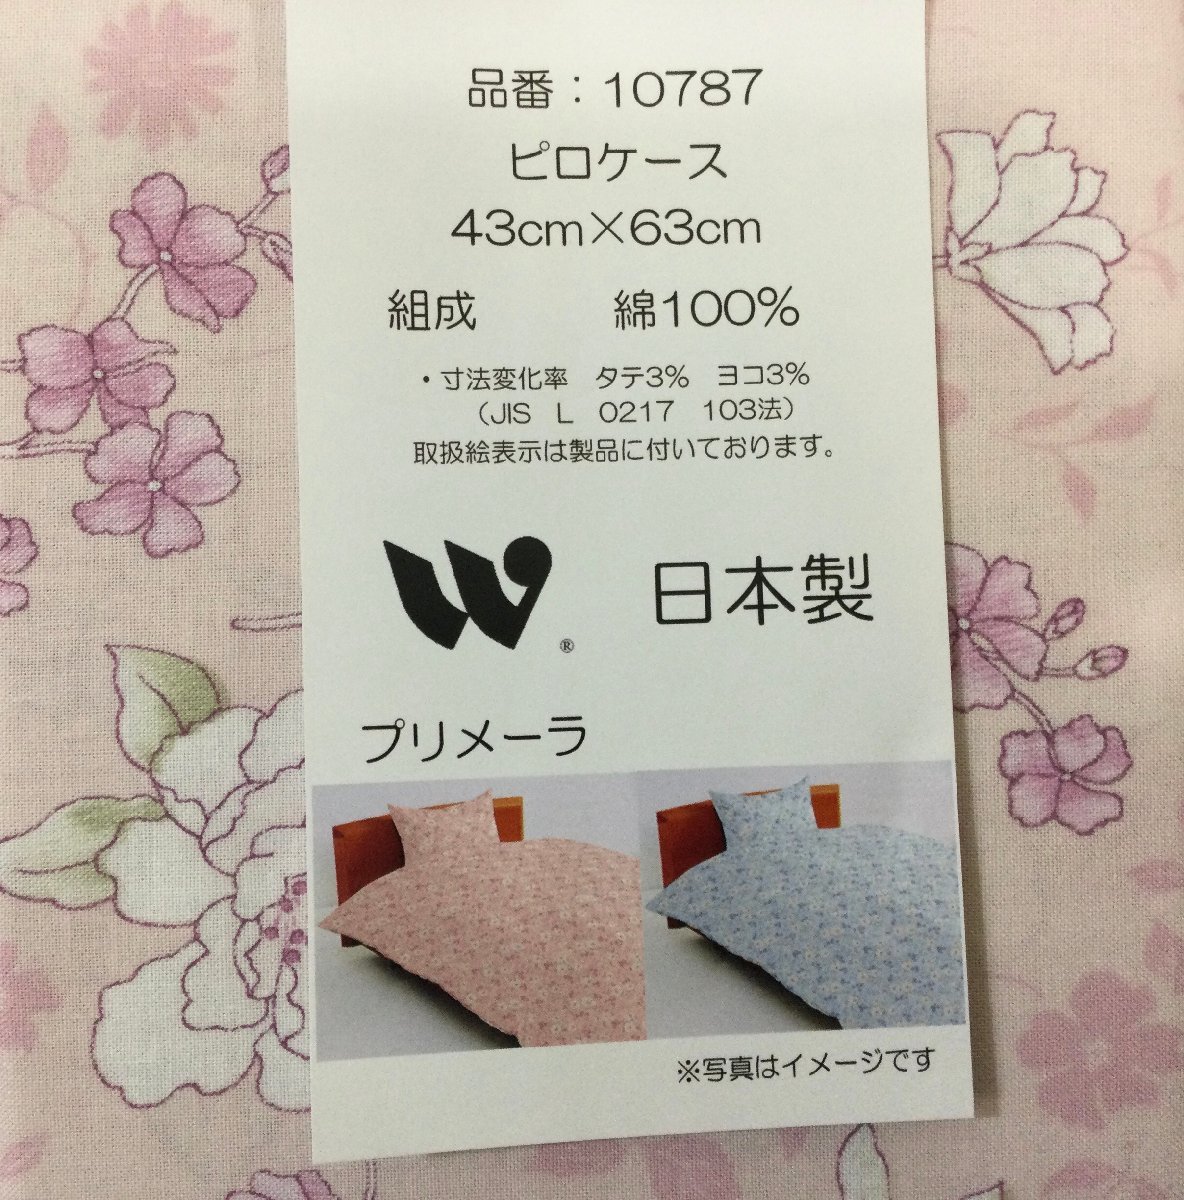 * pillow кейс ( подушка покрытие )*43x63.* хлопок 100%* двусторонний такой же ткань использование * inserting ., застежка-молния * сделано в Японии * розовый серия * стоимость доставки 185 иен 